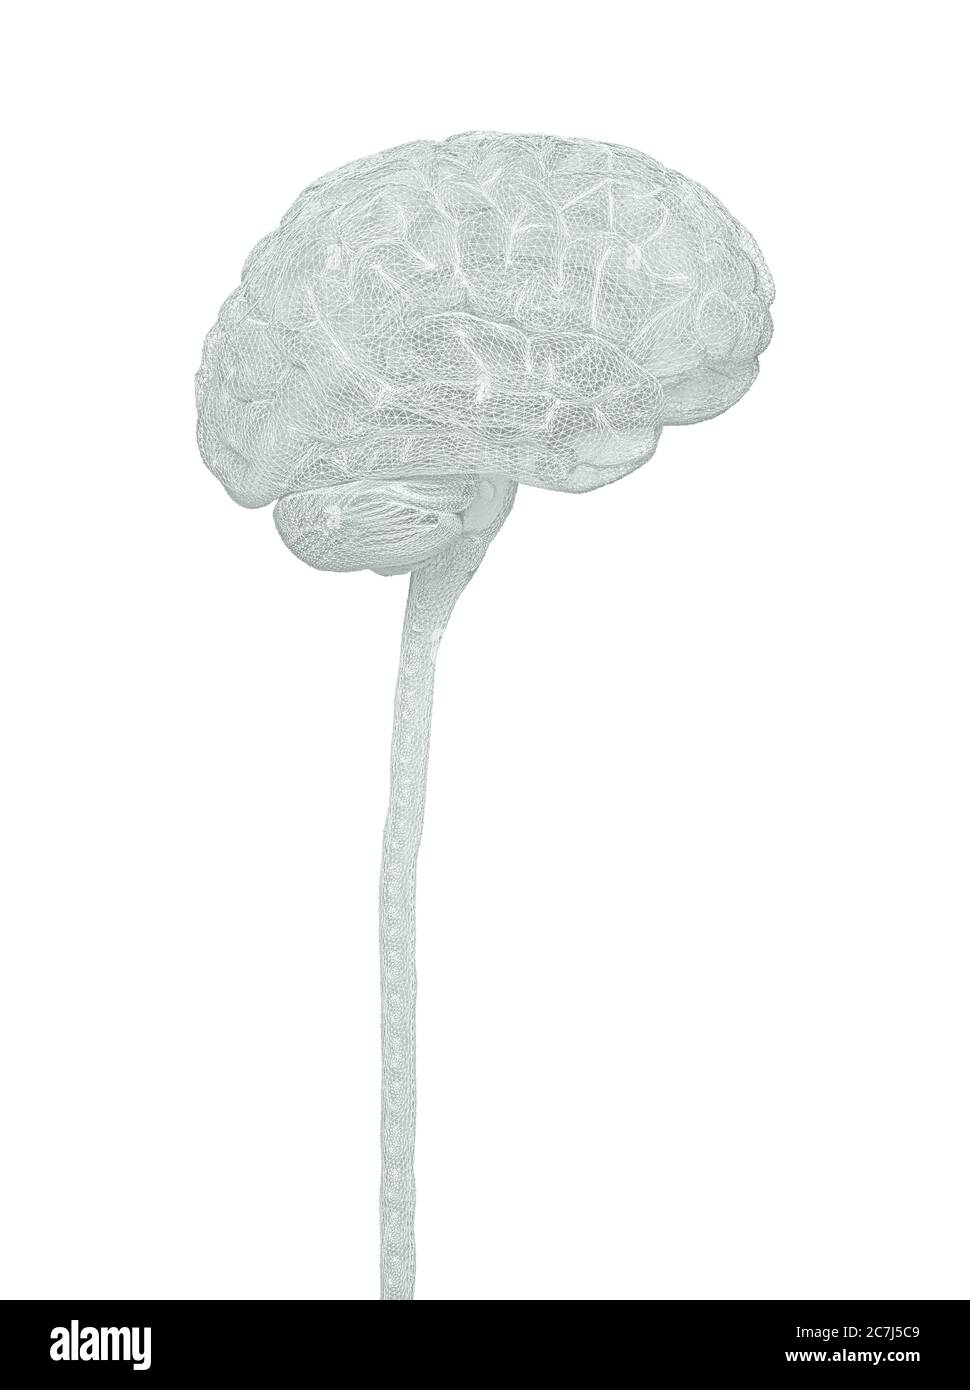 Cervello umano e midollo spinale, illustrazione. Foto Stock